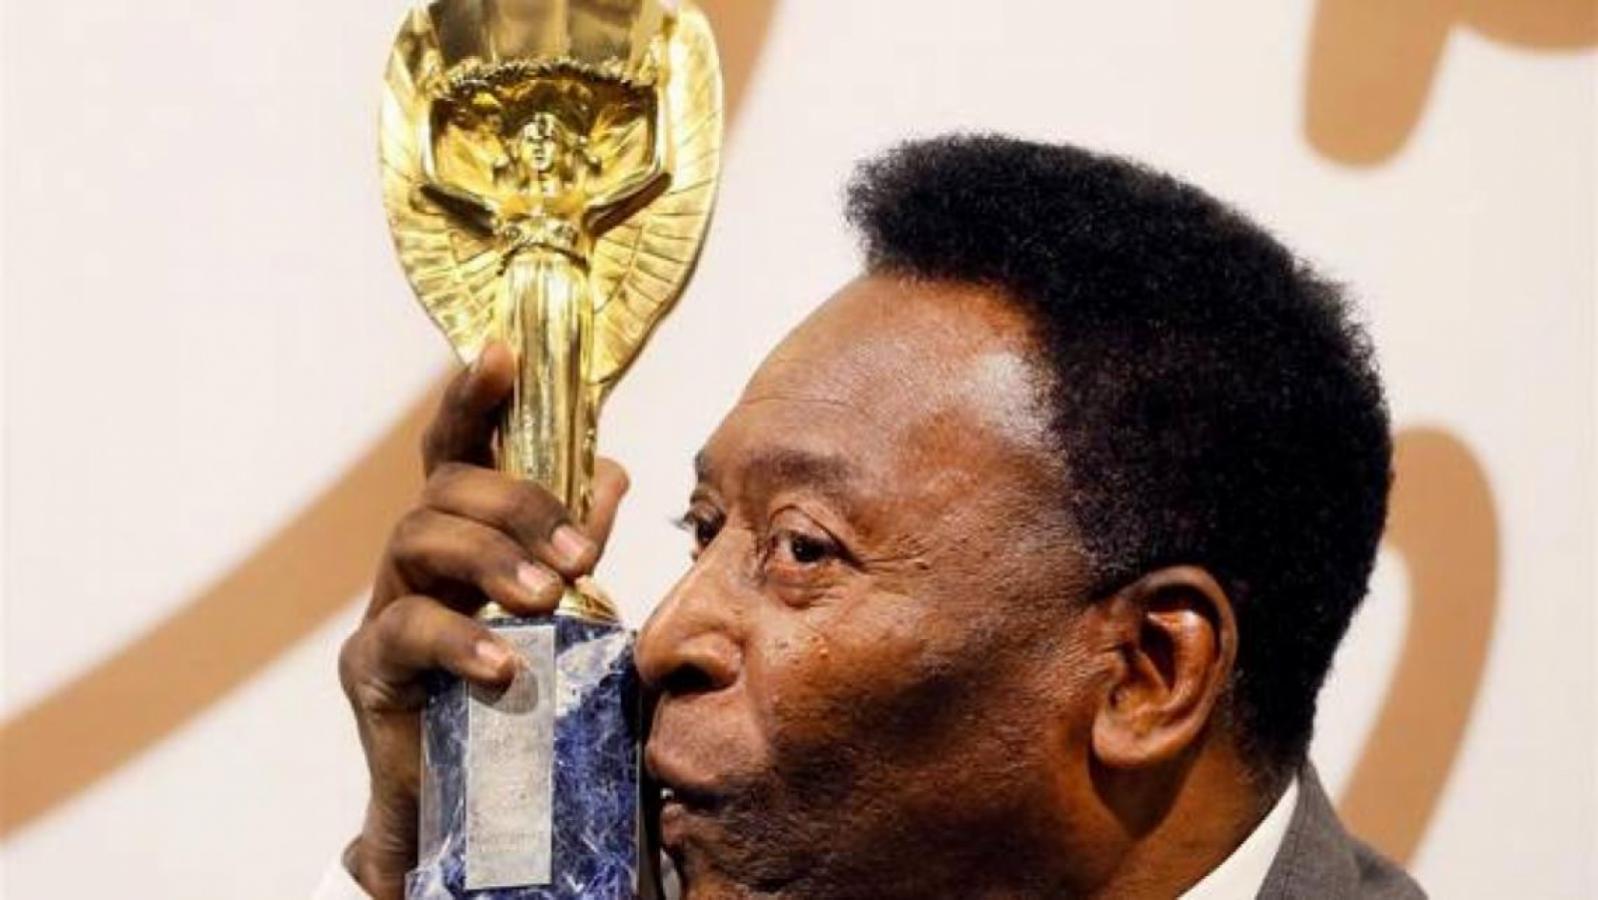 Imagen Pele, con la replica de la copa Jules Rimet, que subastó en 2016 para ayudar a un Hospital en Curitibavendio